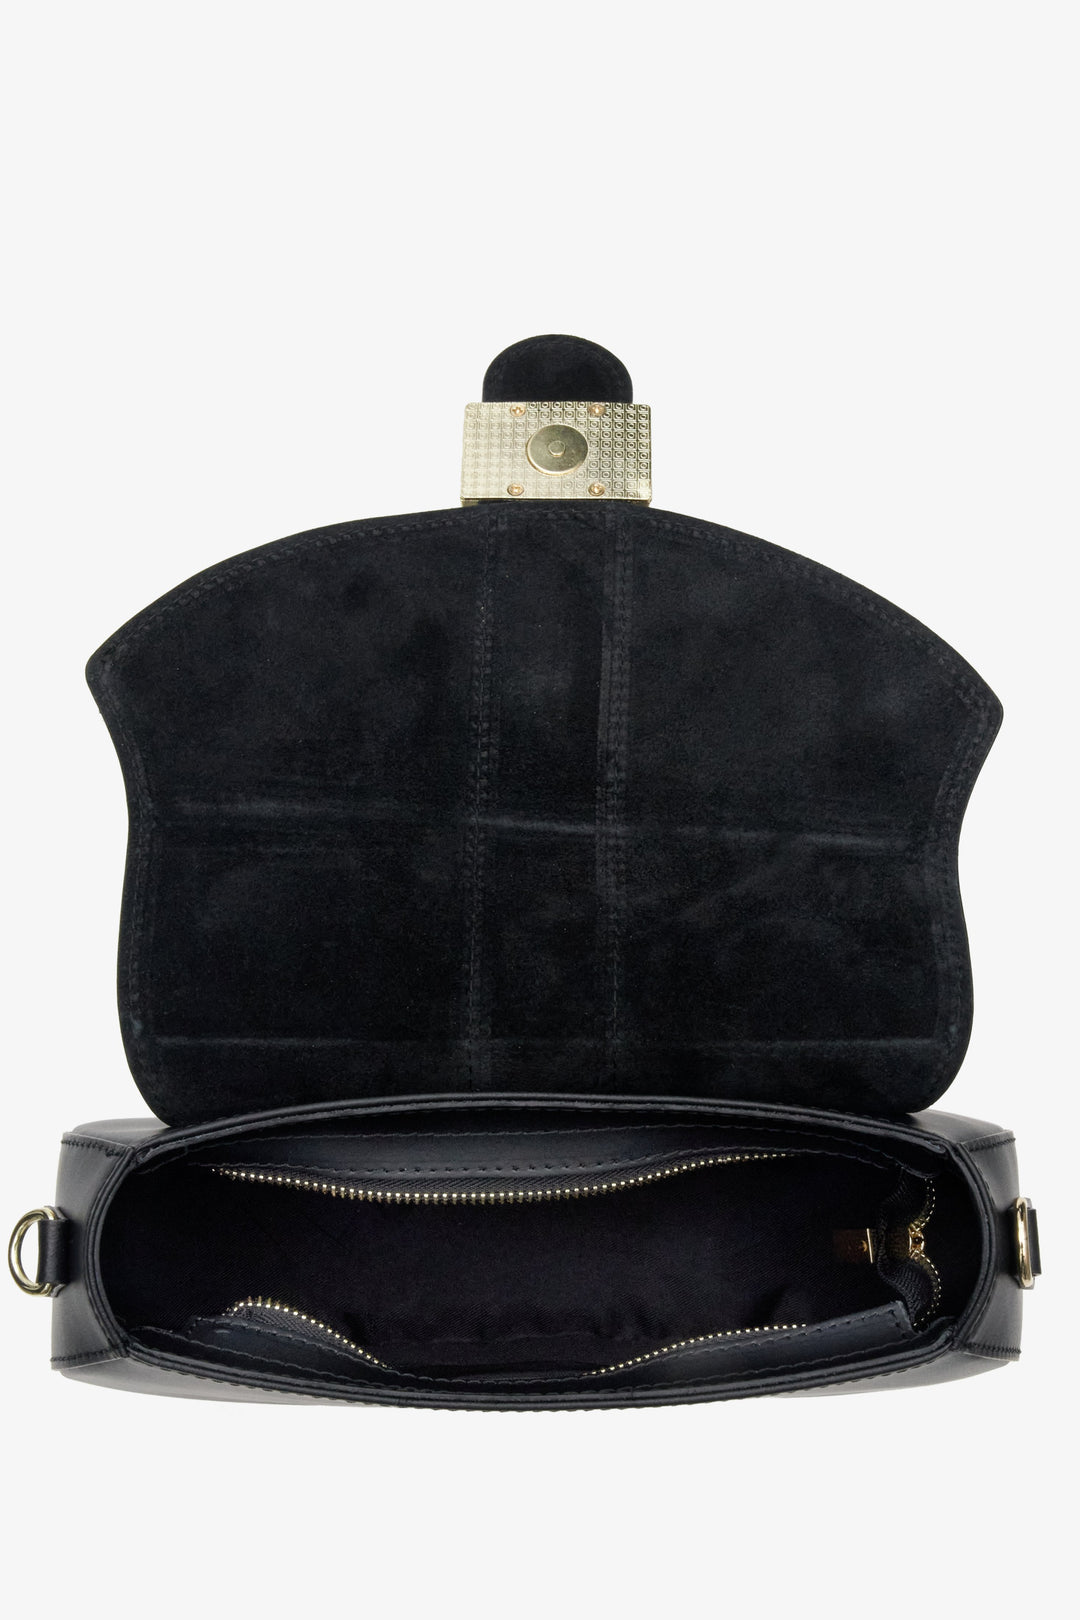 Damska torebka w kształcie podkowy w kolorze czarnym Estro - wnętrze modelu.